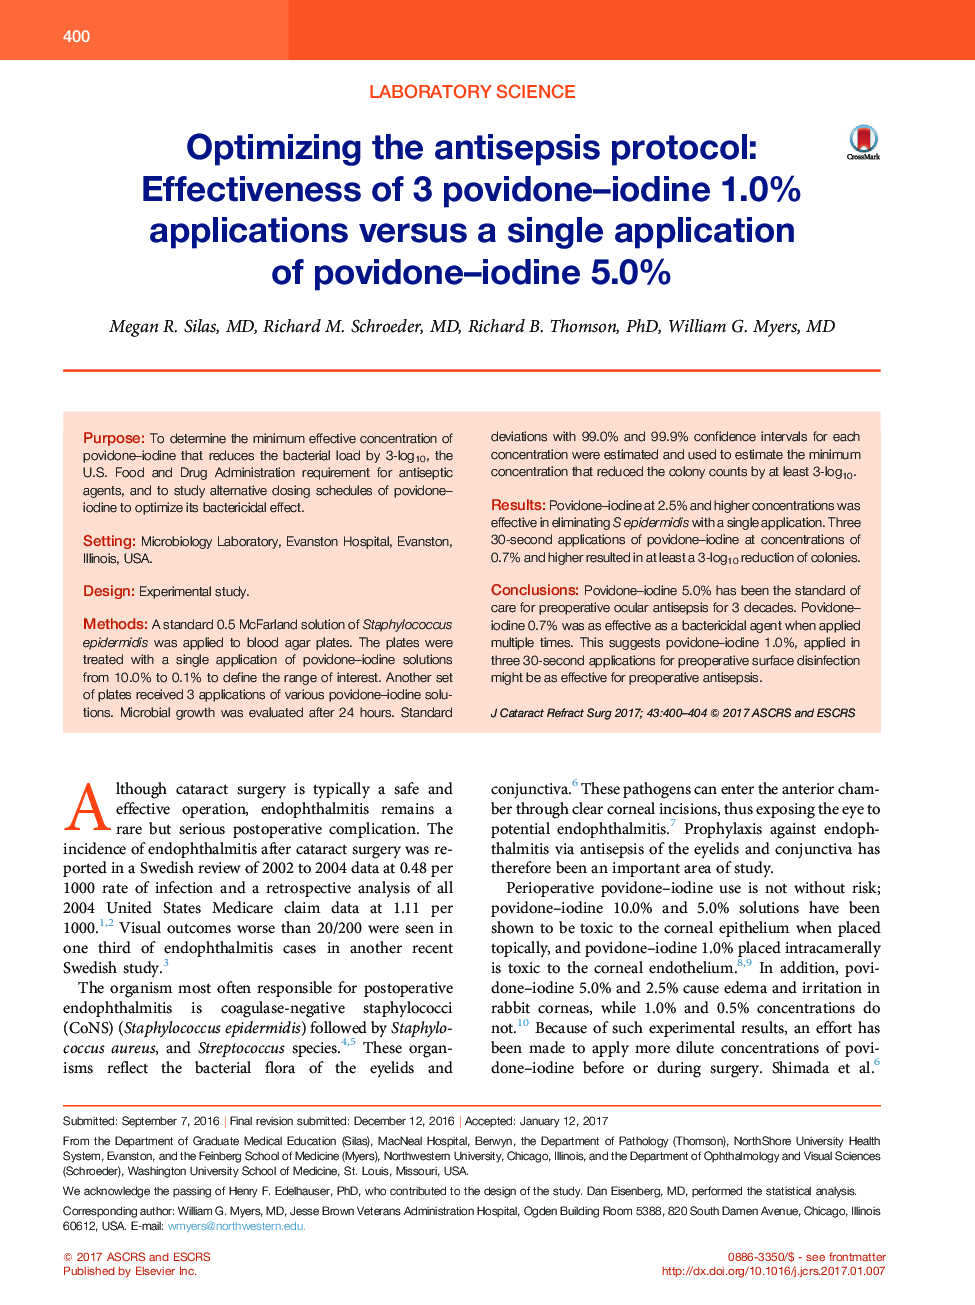 بهینه سازی پروتکل آنتیسیسپسی: اثربخشی 3 مورد پودوفیلد یددار 1.0٪ در مقایسه با یکبار مصرف پپیدون یدا 5٪ 